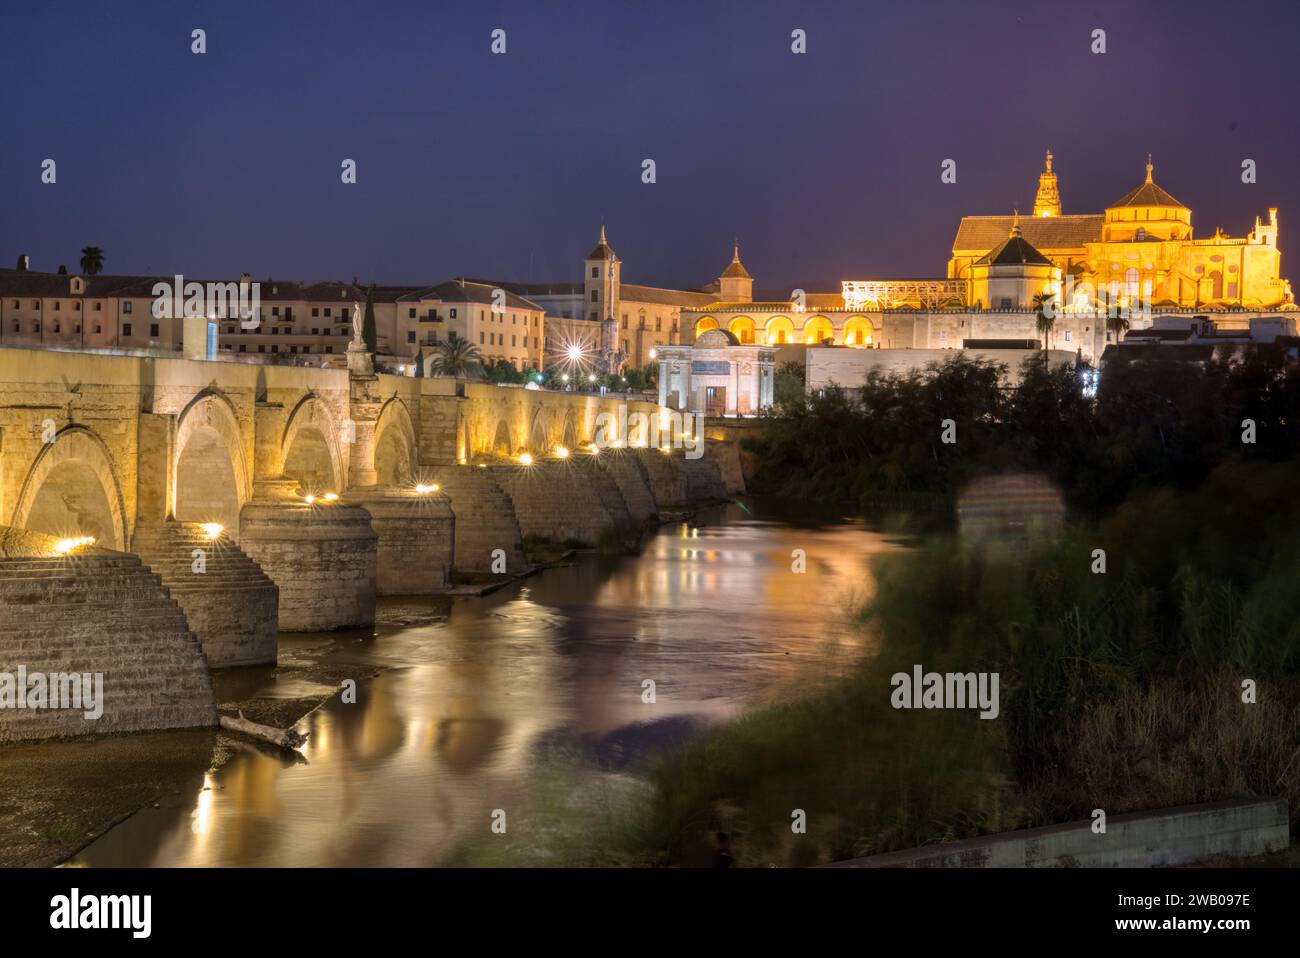 Ancient roman bridge over the Guadalquivir River in Cordoba Spain at night Stock Photo